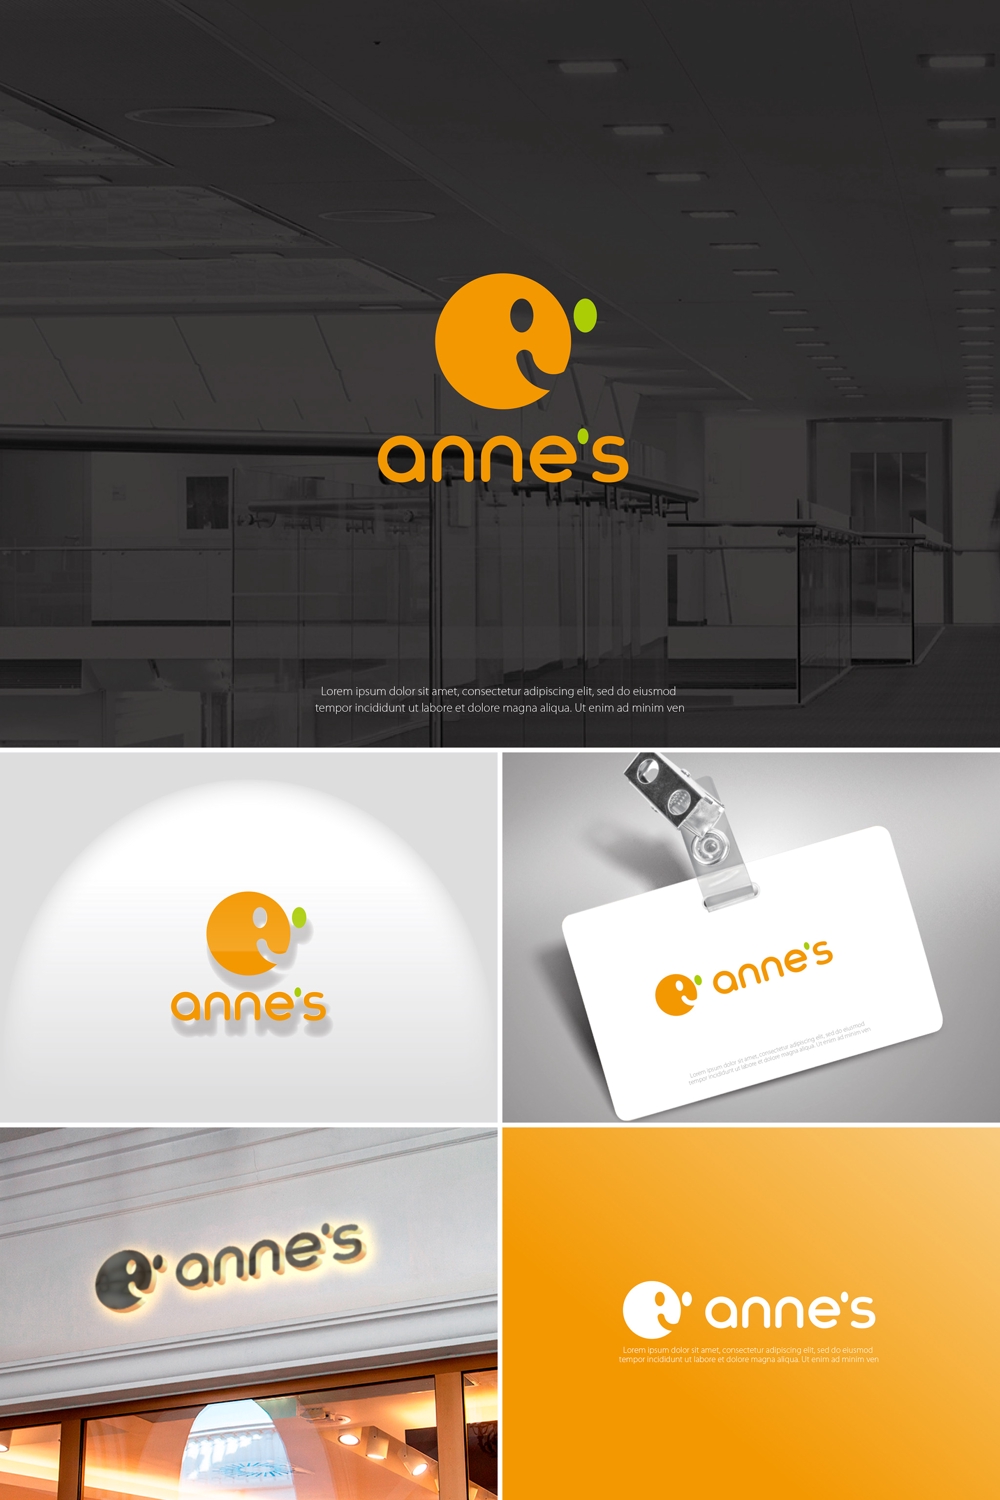 デザインユニット『杏子 anne's』のロゴ